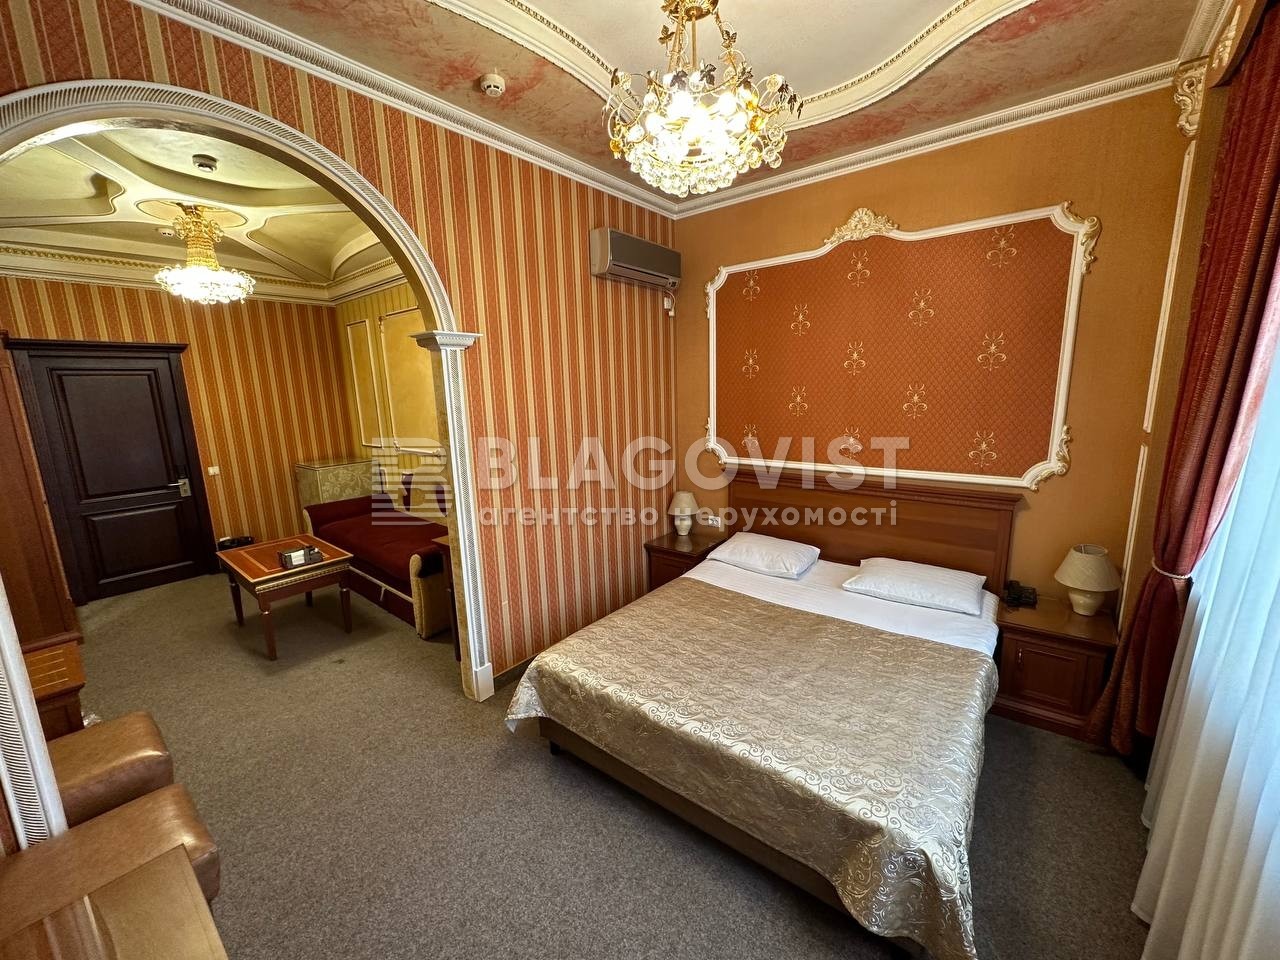  Готель, D-39477, Тулузи, Київ - Фото 11